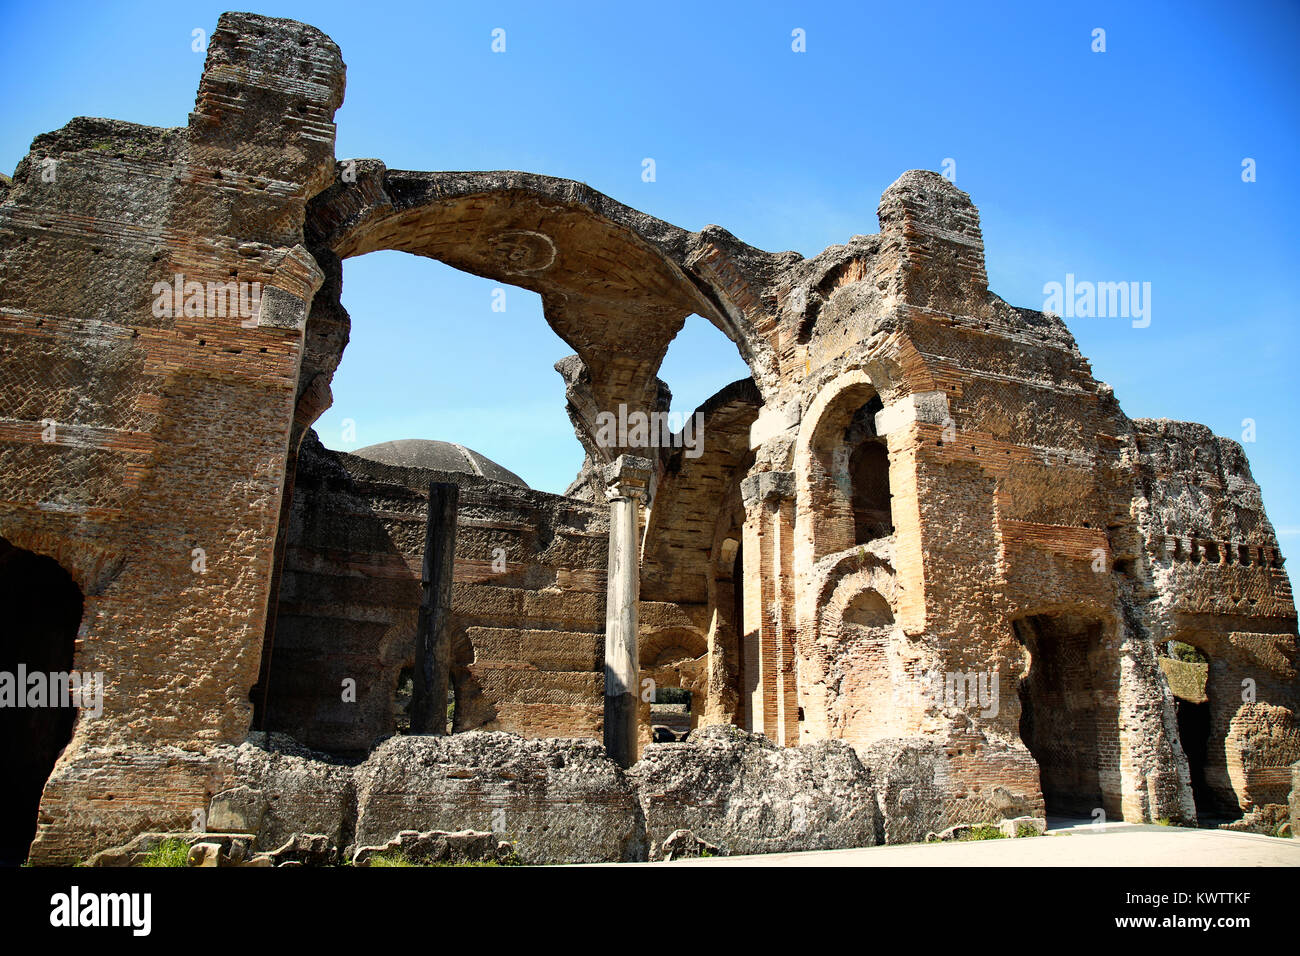 Les ruines antiques de la Villa Adriana ( La Villa d'Hadrien ), Cryptoporch de merveilleux Spa (Grandi)) Tivoli, Italie Banque D'Images